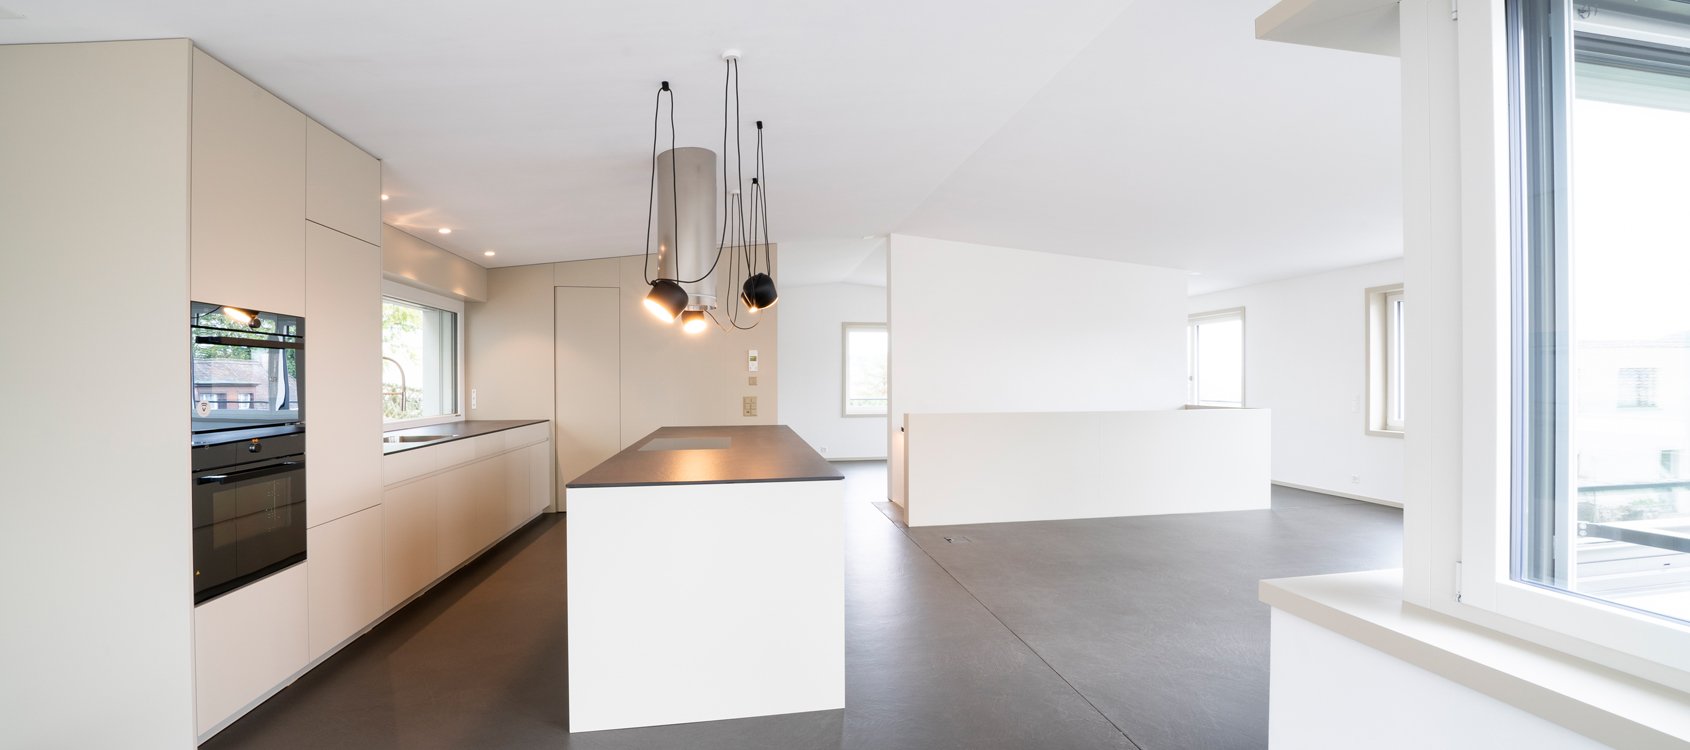 Obrist interior AG_Schweizer Wicki Architekten_EFH Zurich